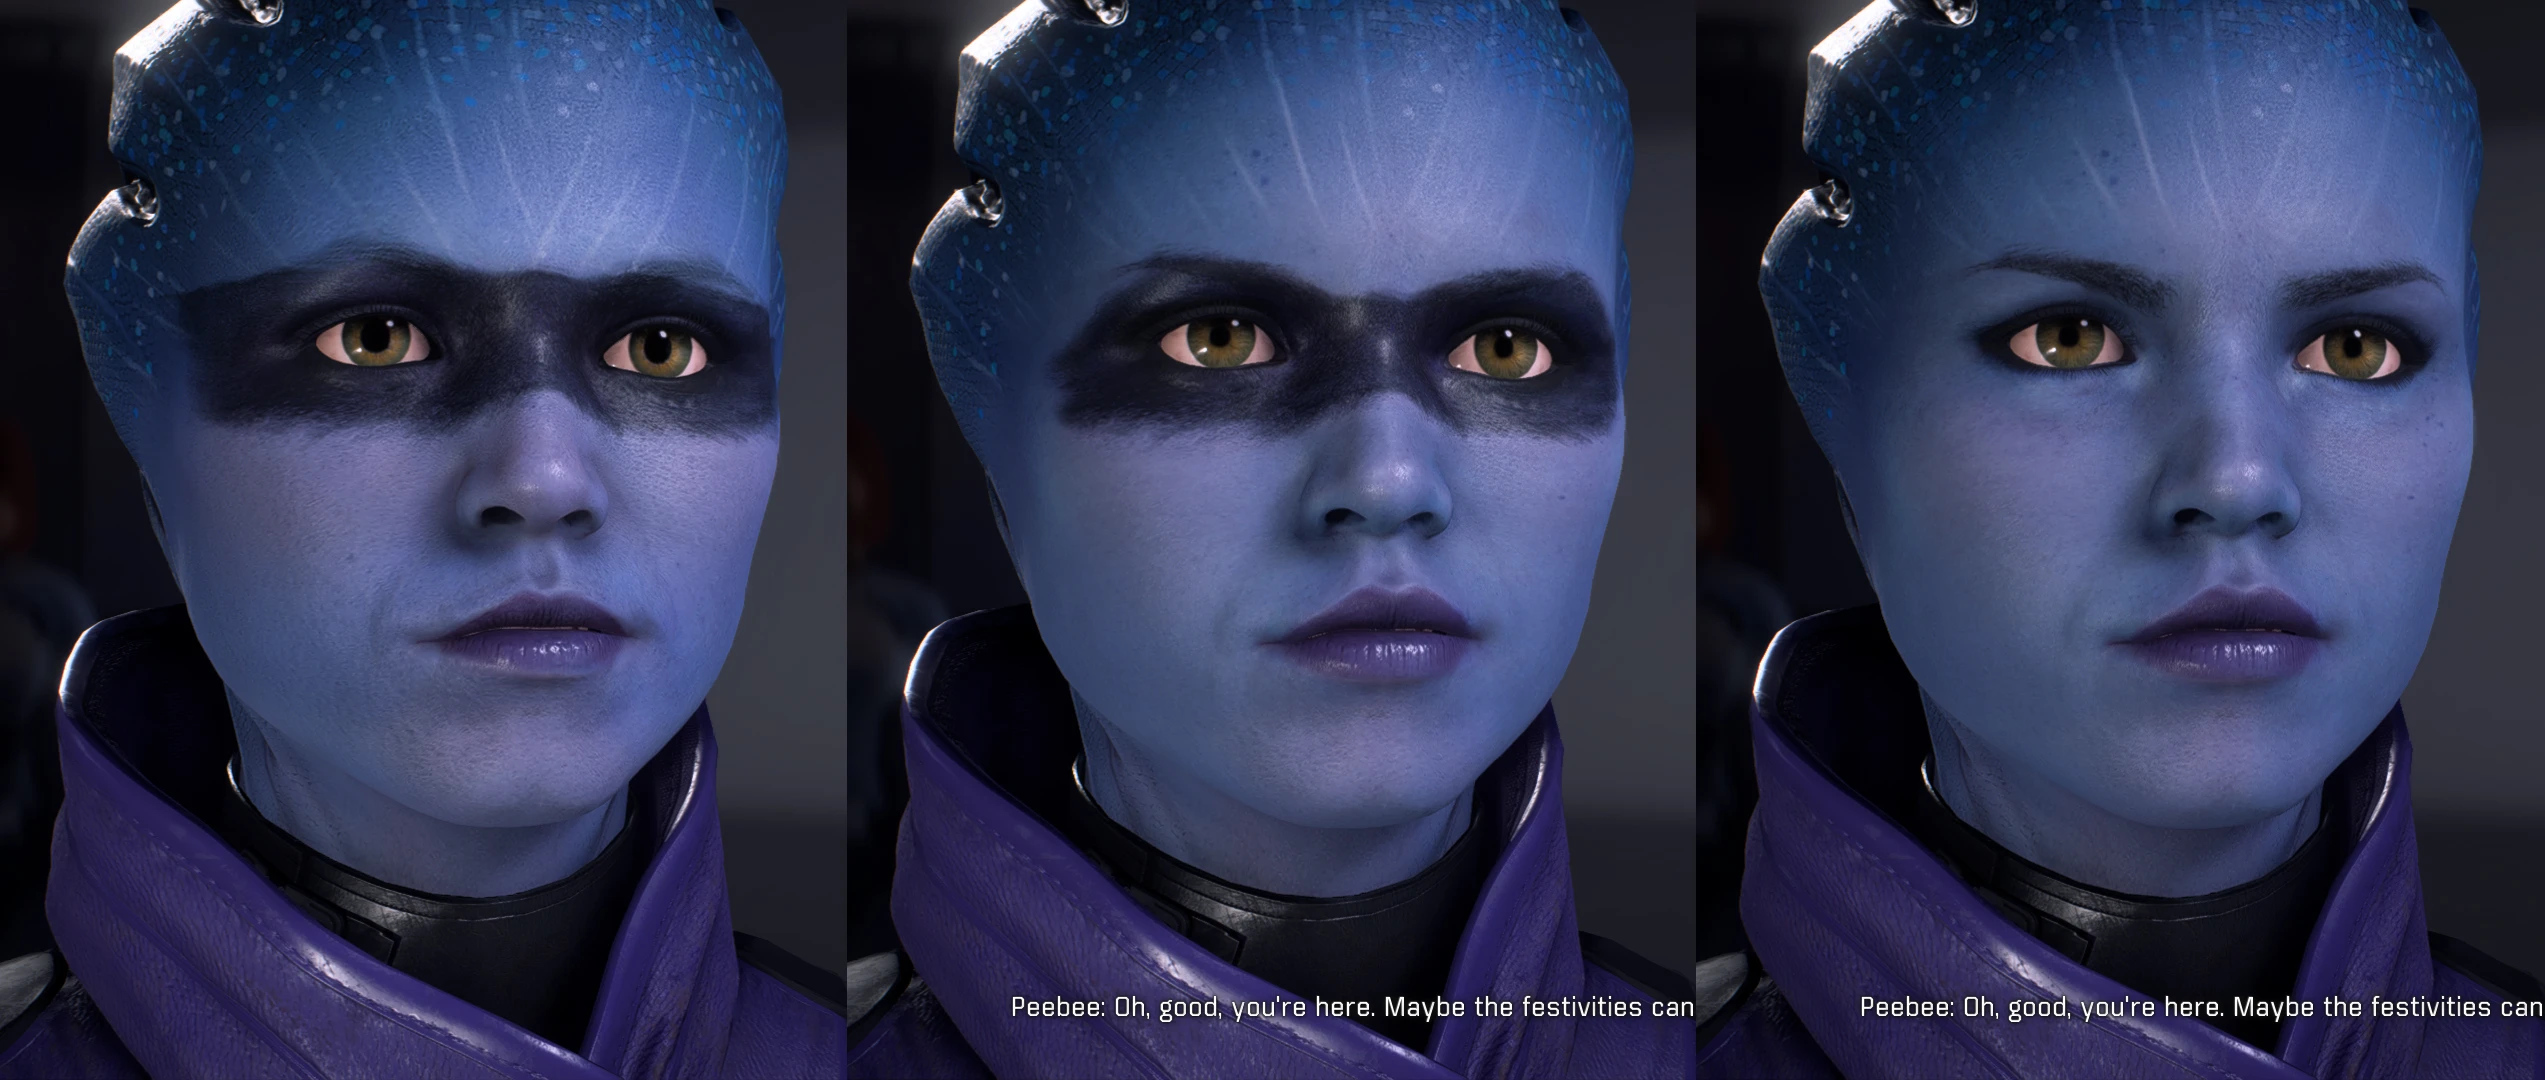 Масс вый. Peebee Mass Effect. Mass Effect Andromeda прически. Андромеда персонажи. Масс эффект Андромеда персонажи.